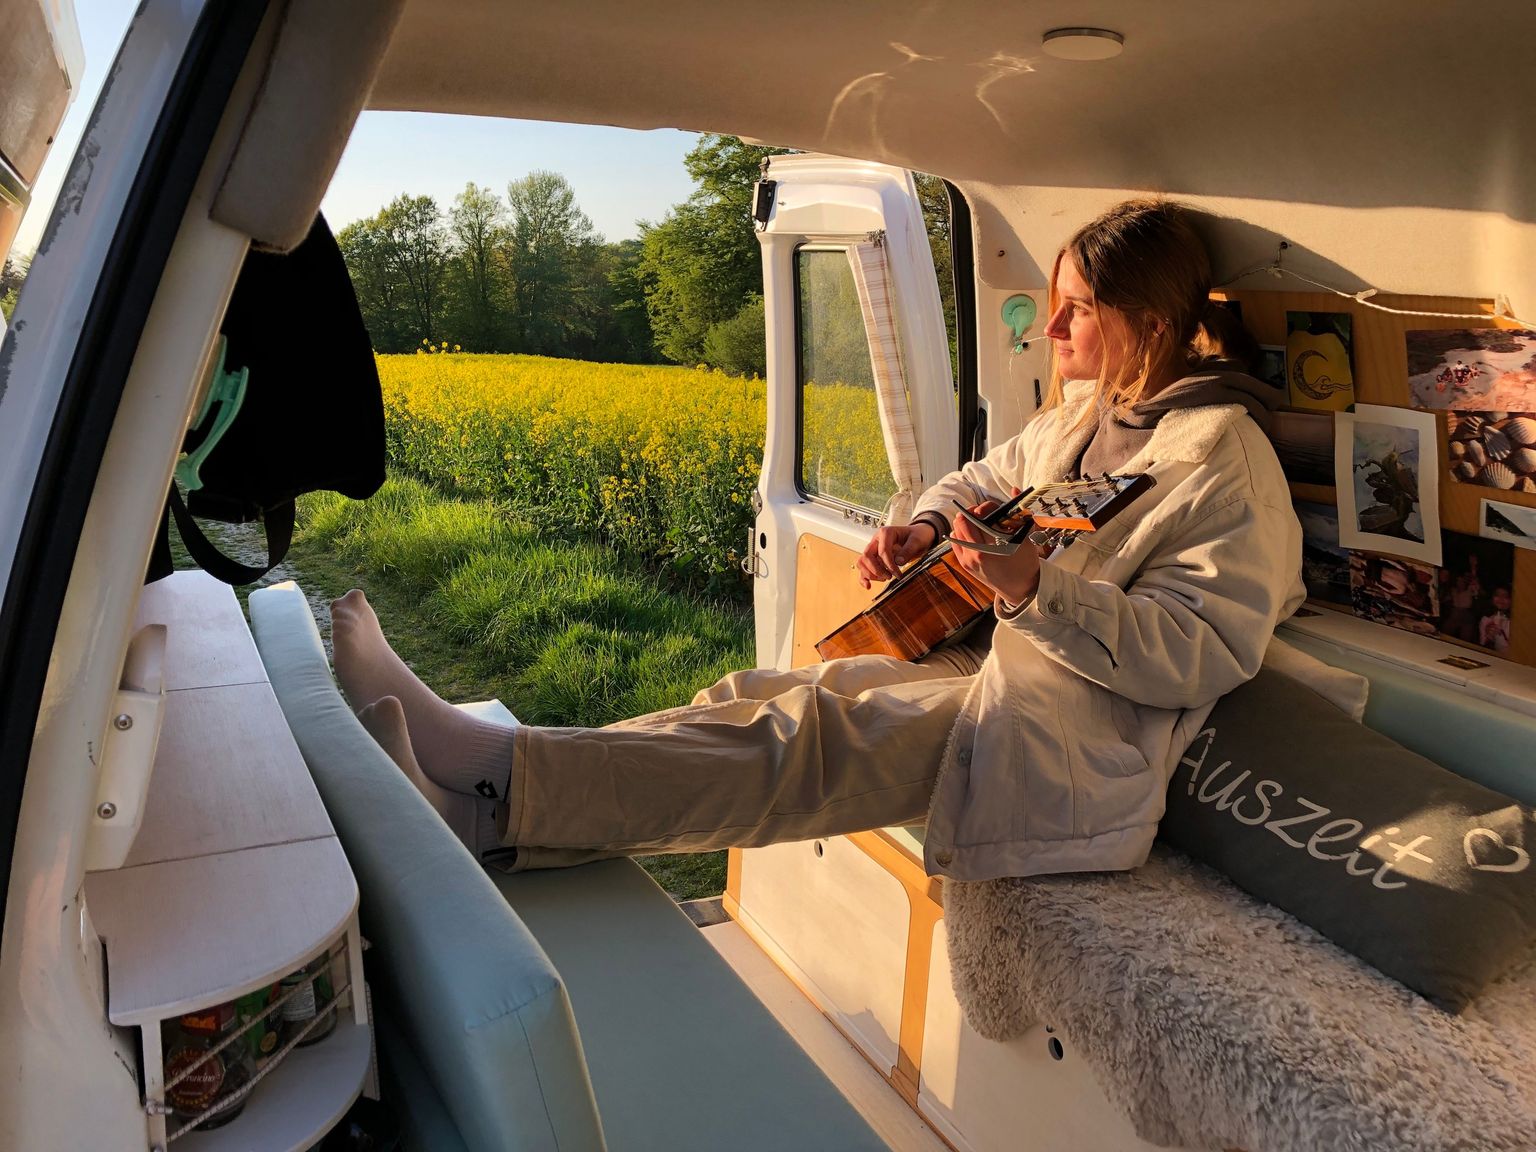 Hinterland-Mitarbeiterin beim Gitarrenspielen im Van